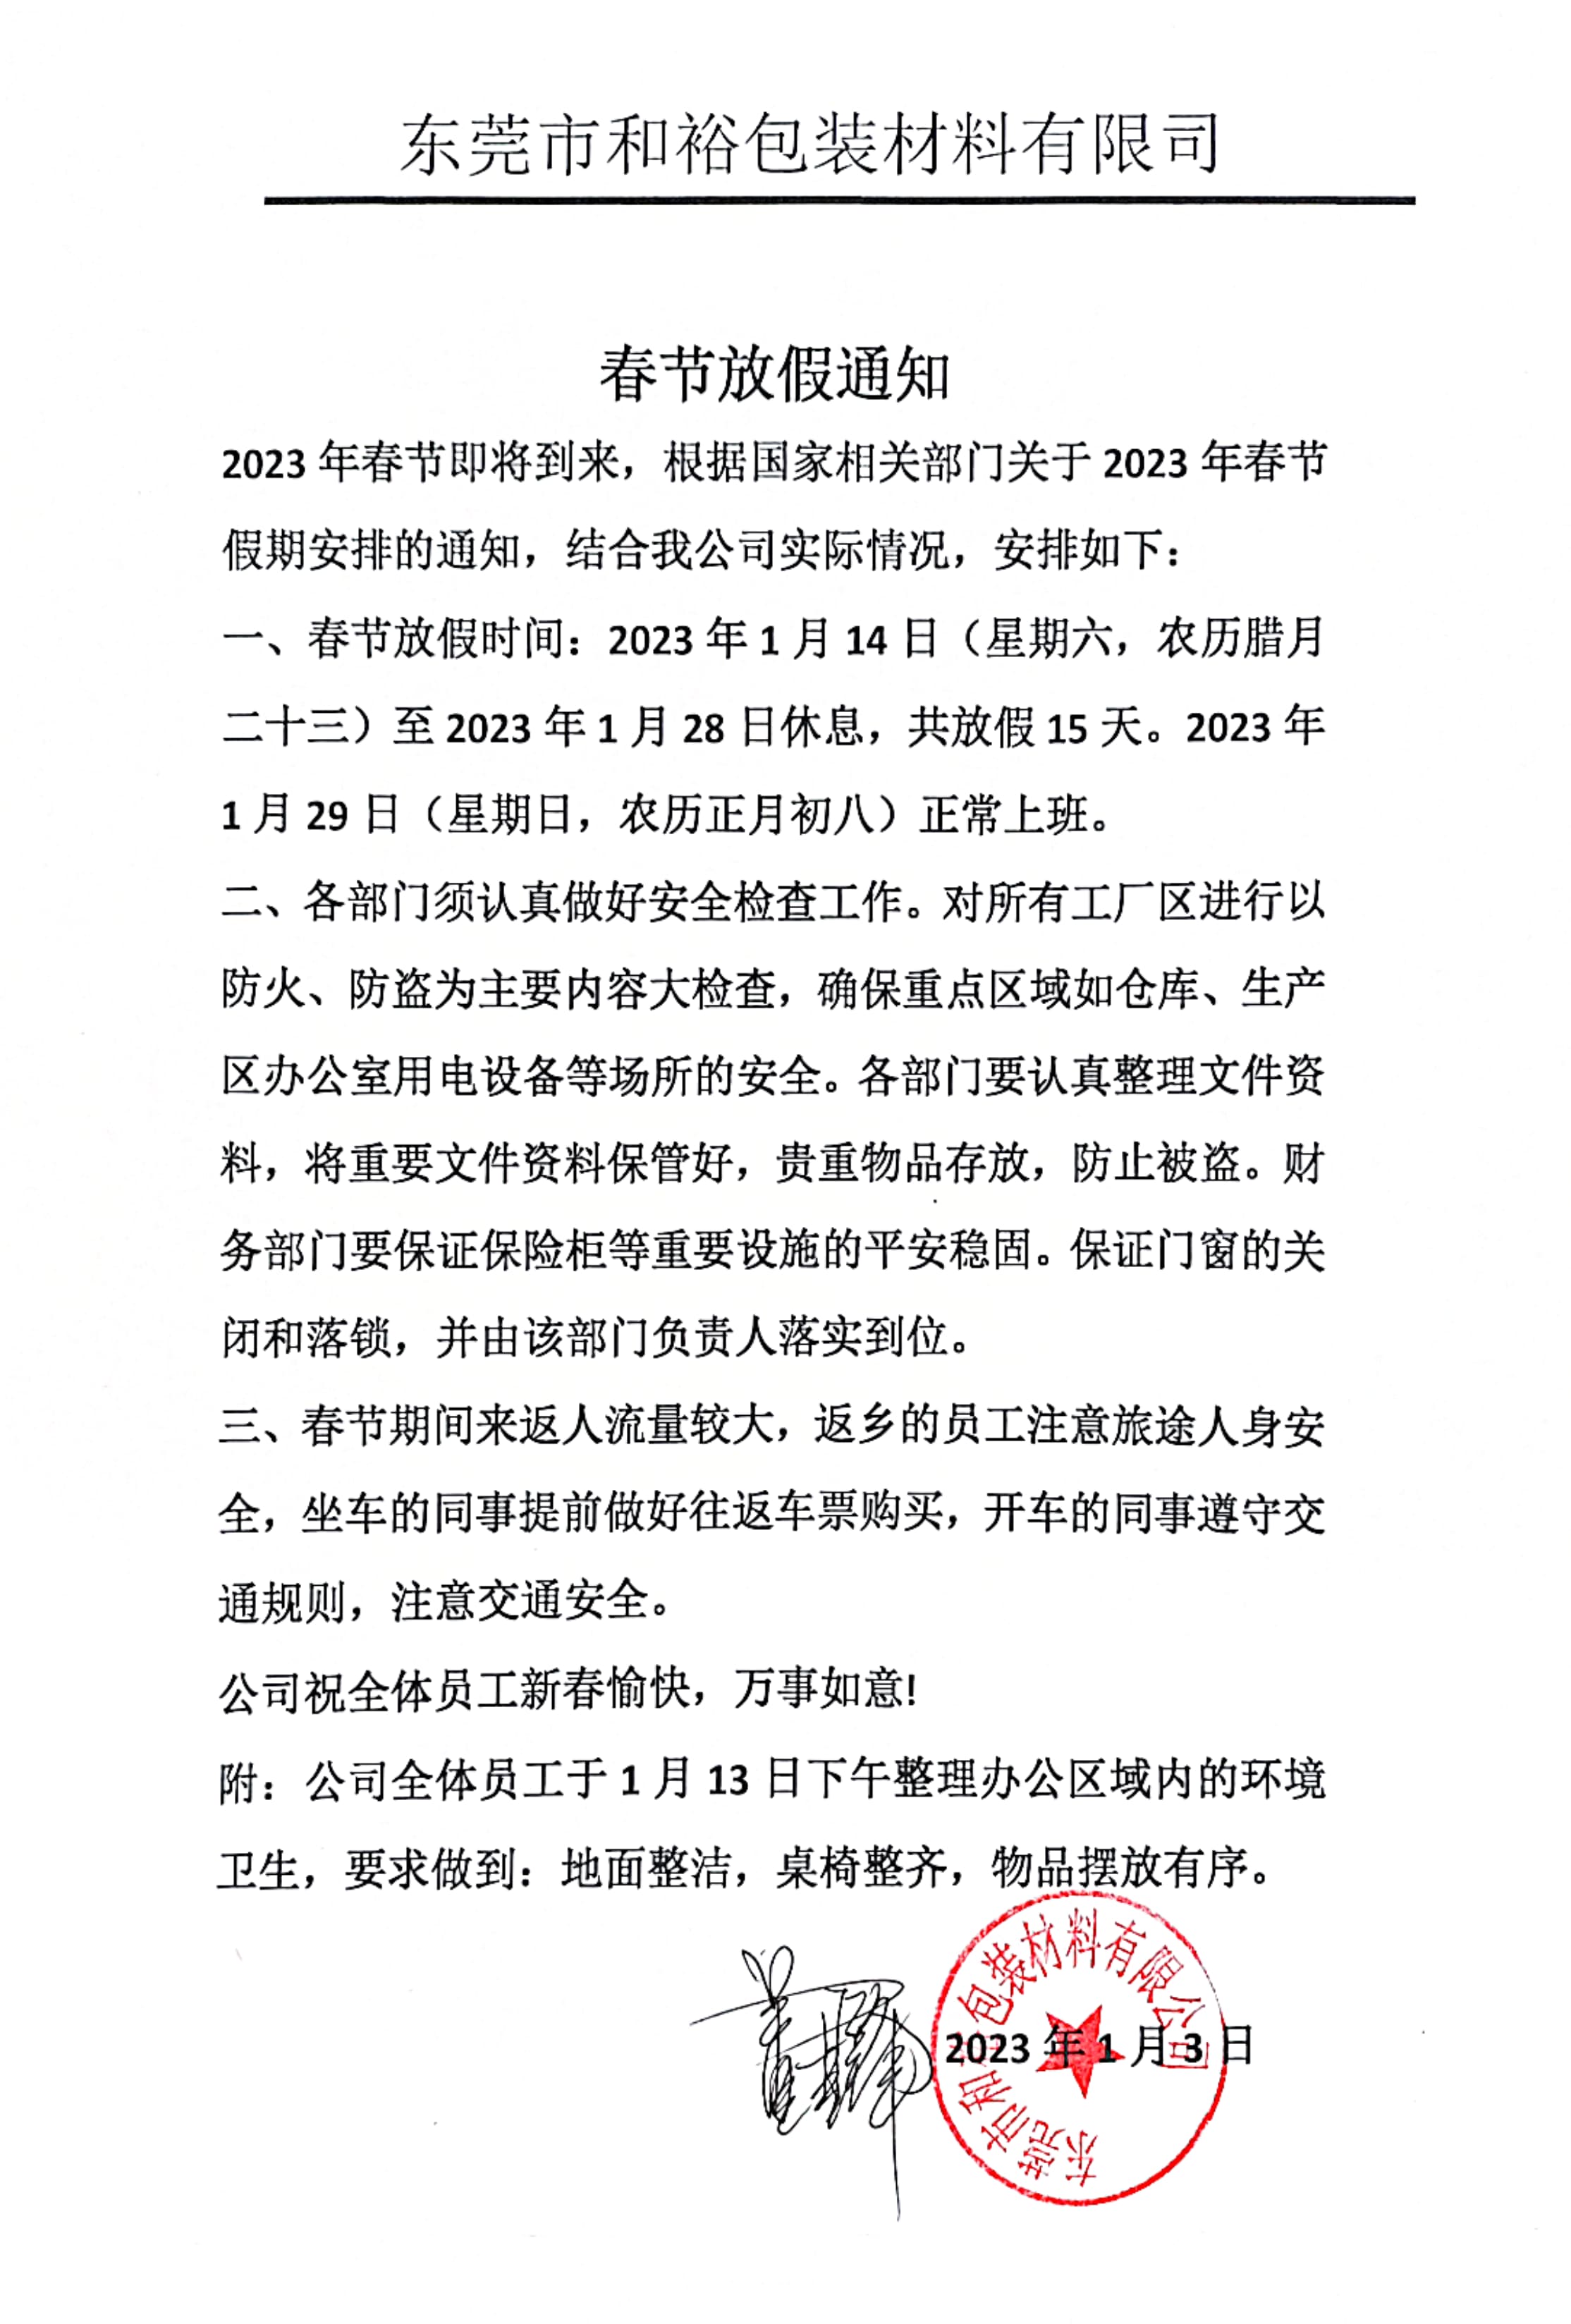 咸宁市2023年和裕包装春节放假通知